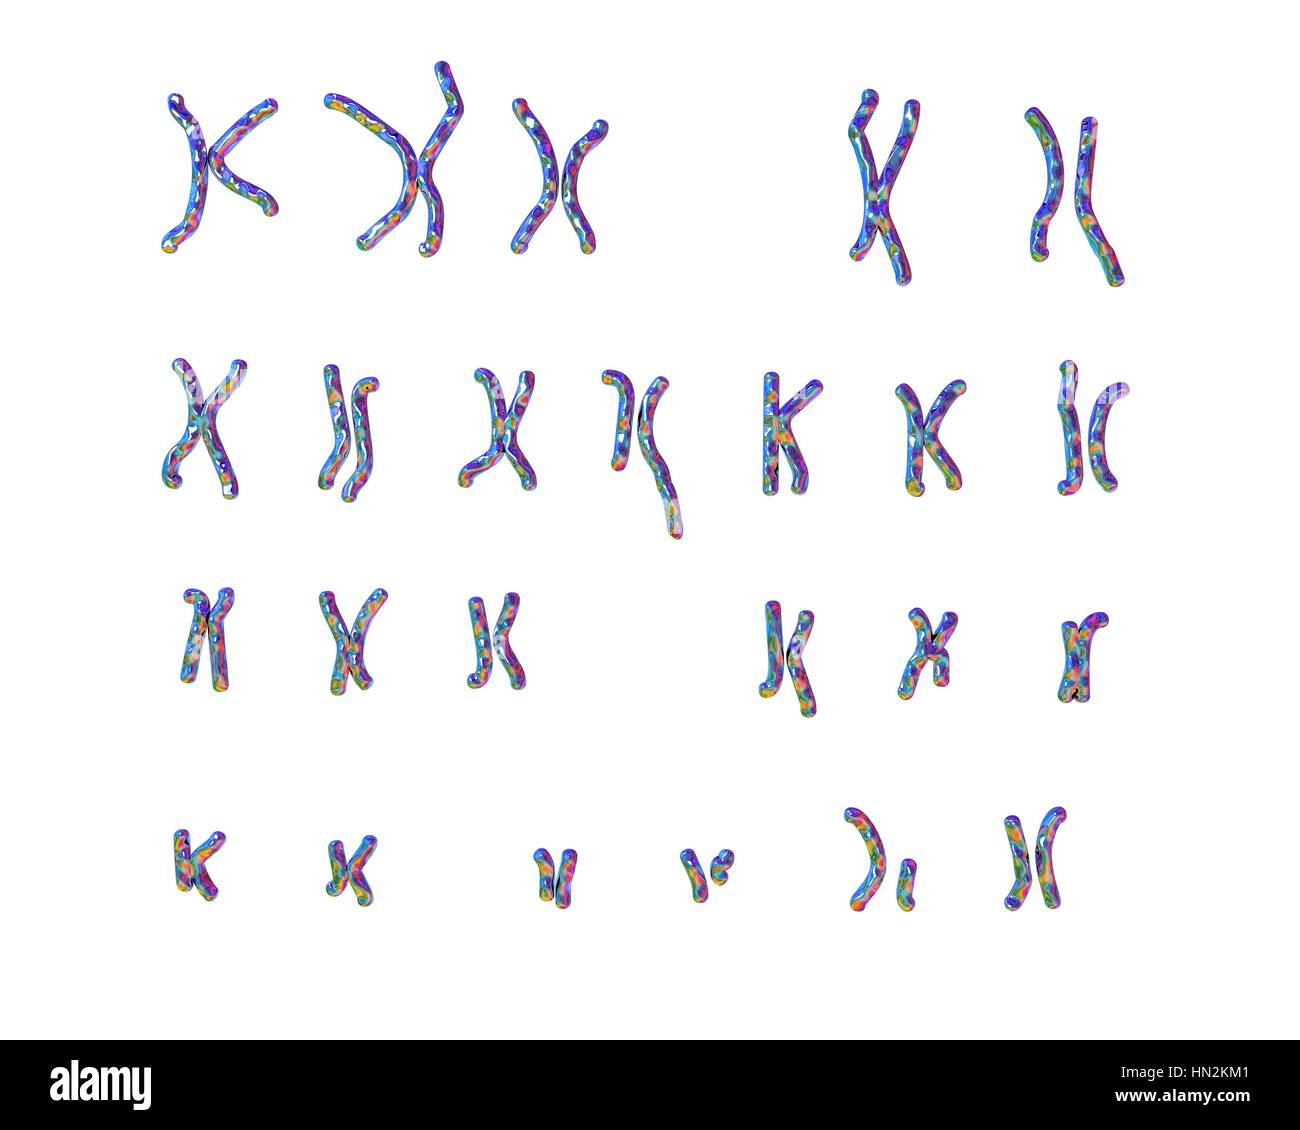 Philadelphia chromosome.Computer ilustración del cariotipo masculino o femenino (conjunto de cromosomas) un cromosoma defectuoso de cada uno de los pares 9 (centro), 22 (centro inferior).Los defectos,en el lado derecho,dos pares de cromosomas para causar leucemia mieloide crónica (LMC).Los 46 cromosomas del cariotipo humano son Foto de stock